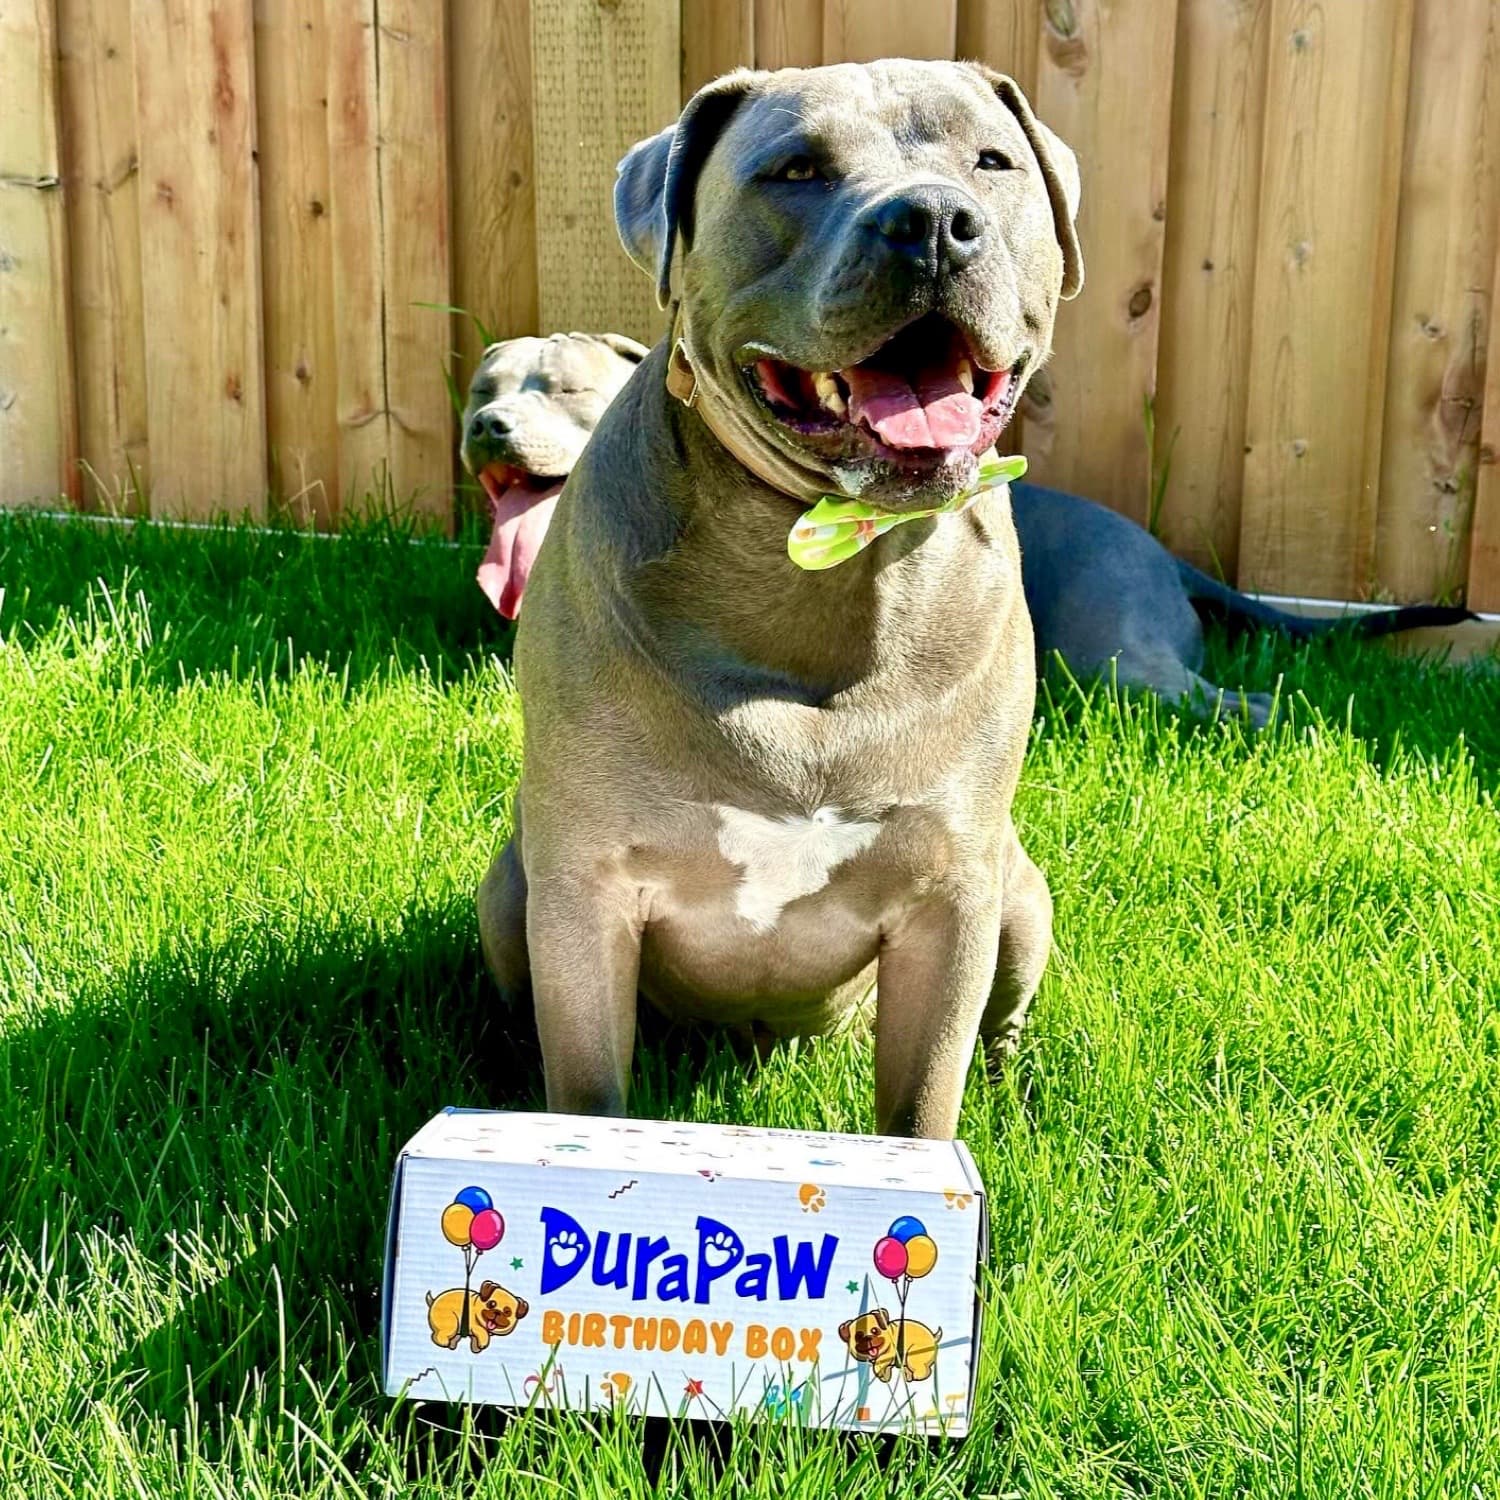 DuraPaw Puppy Dog Birthday Gift Toy Box